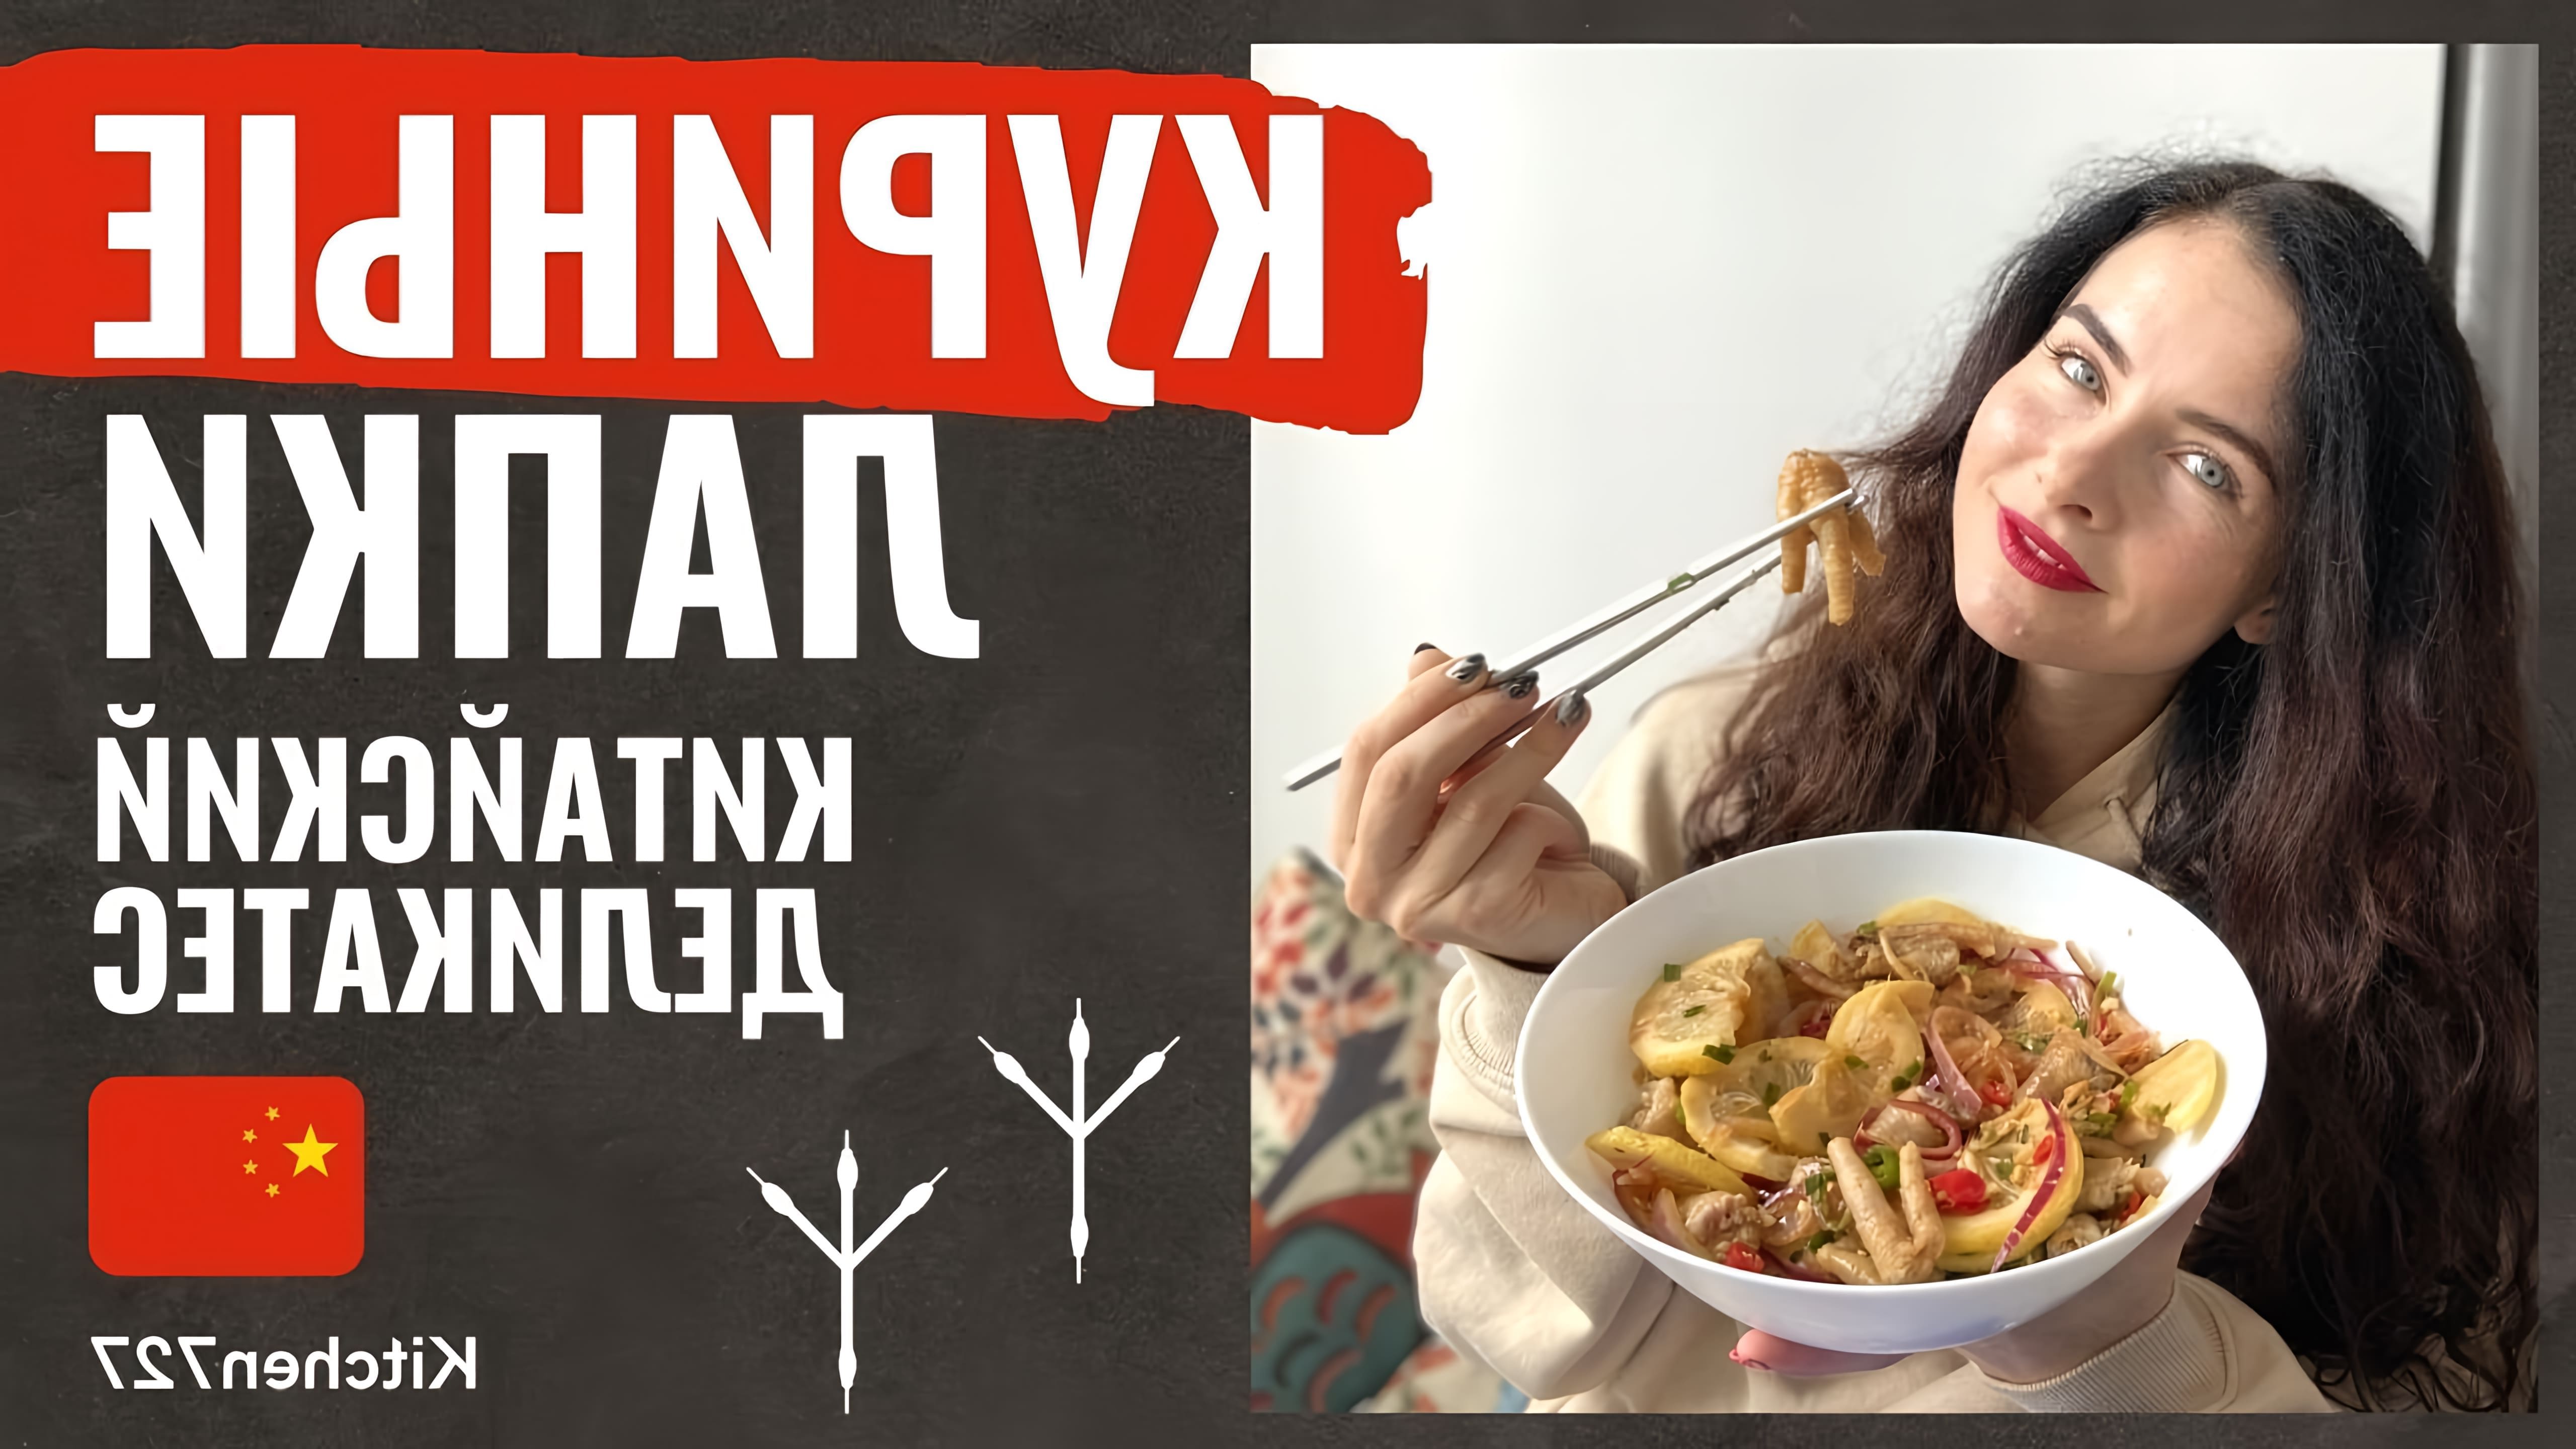 В этом видео Катя, живущая в Китае, готовит куриные лапки в остро-имбирном соусе